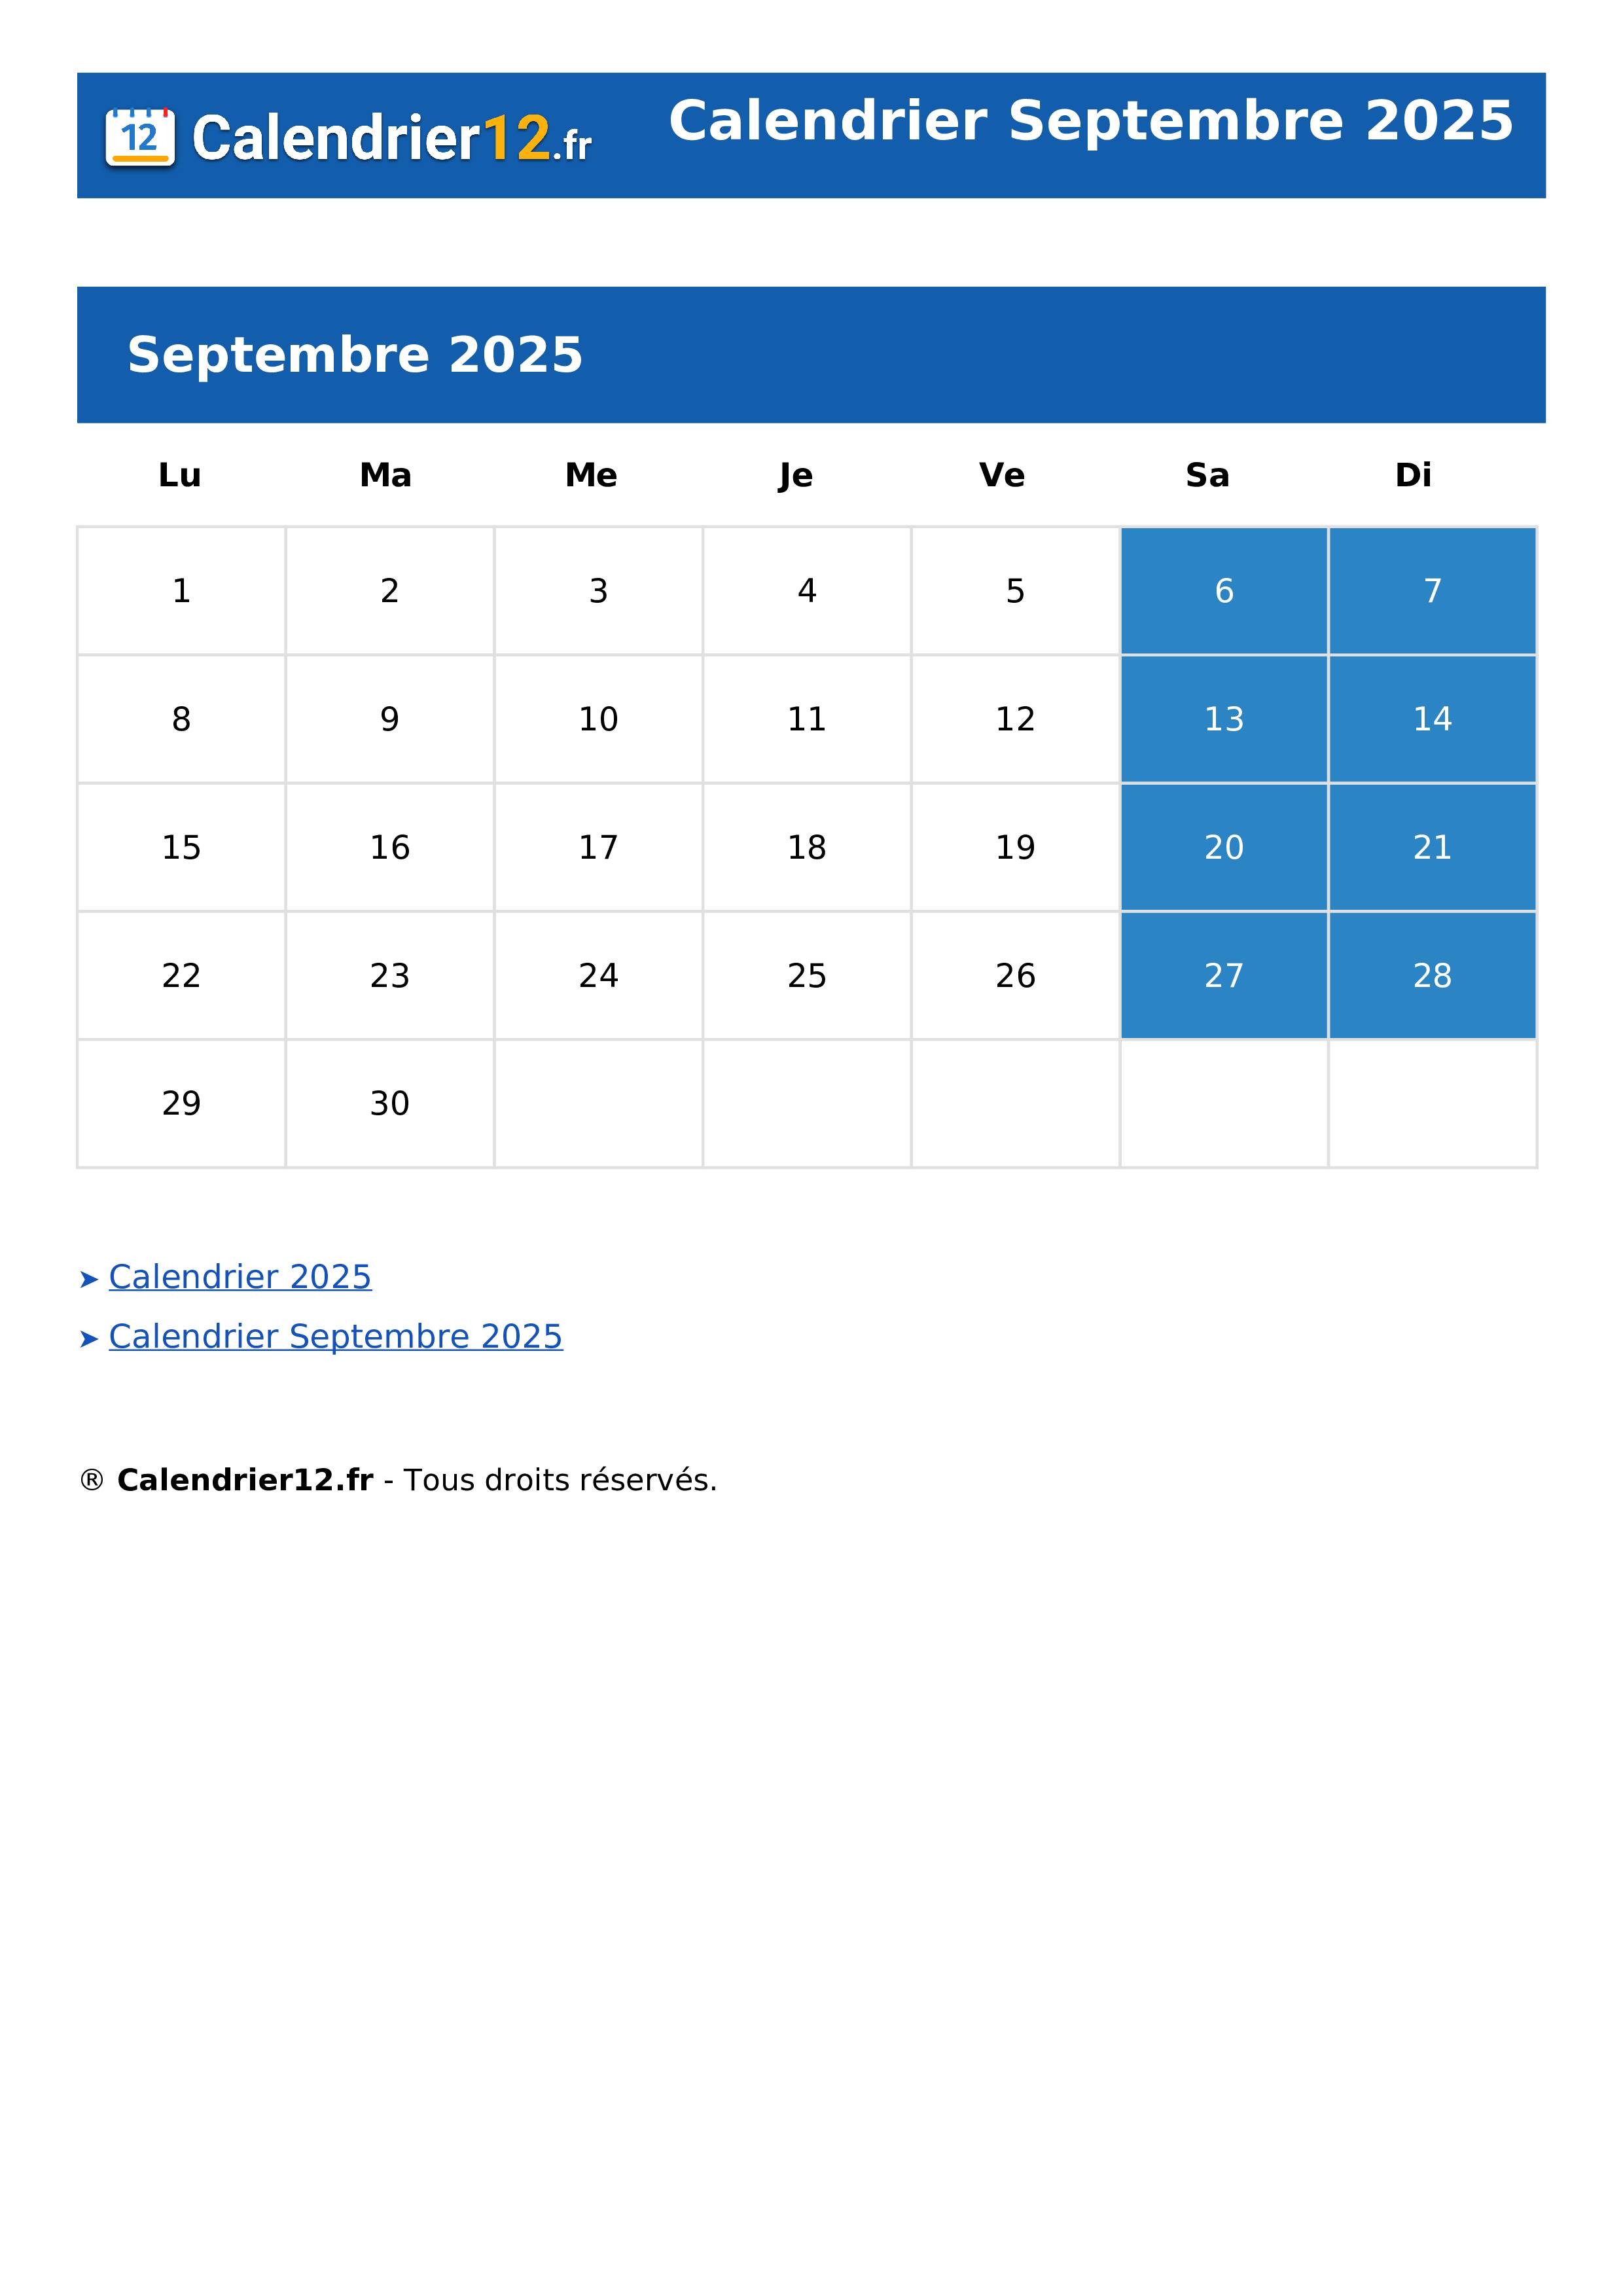 Calendrier Septembre 2025